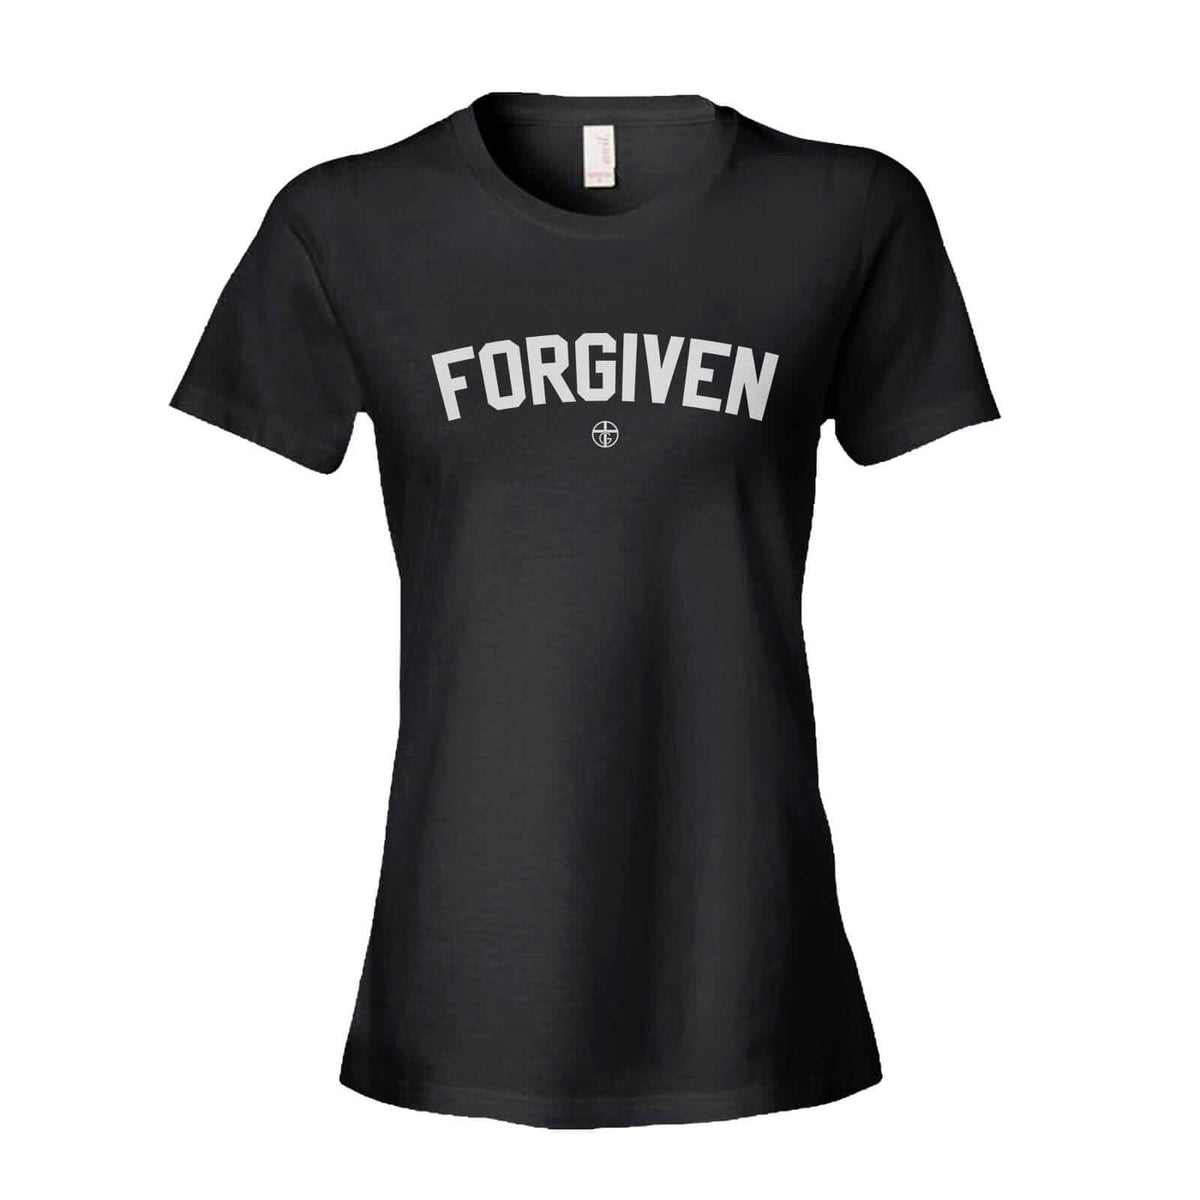 FORGIVEN - Our True God